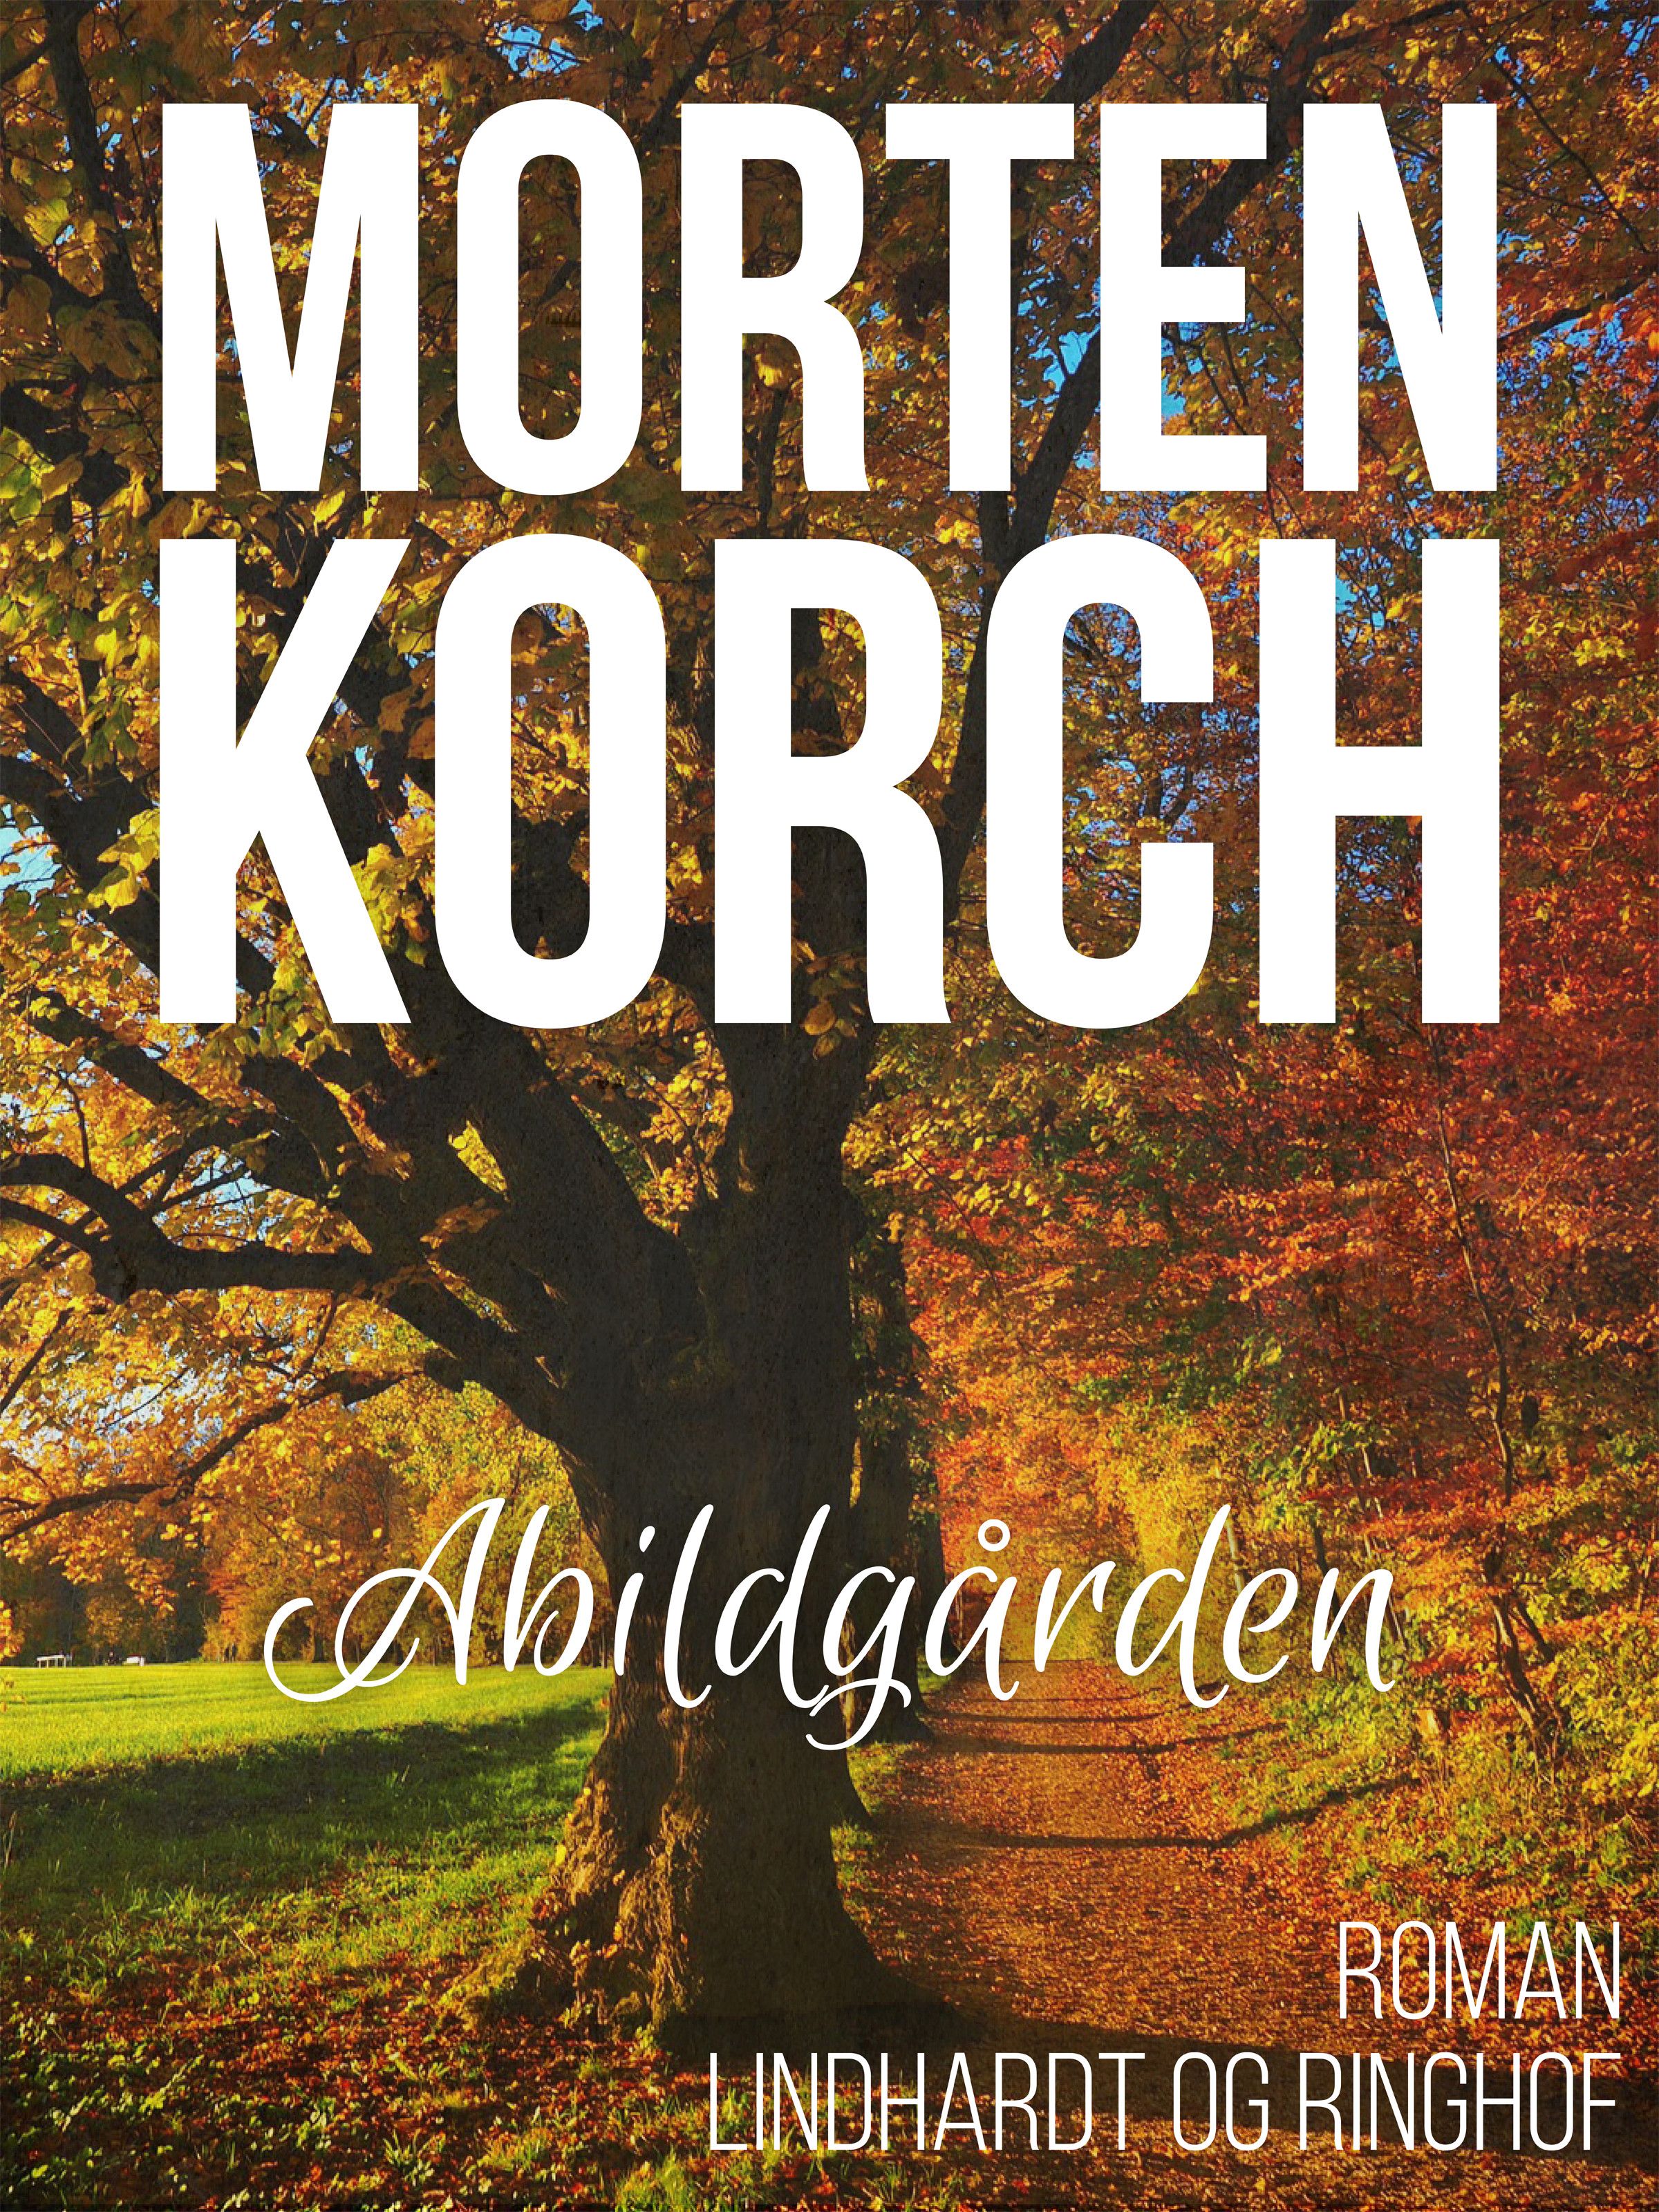 Abildgården, ljudbok av Morten Korch